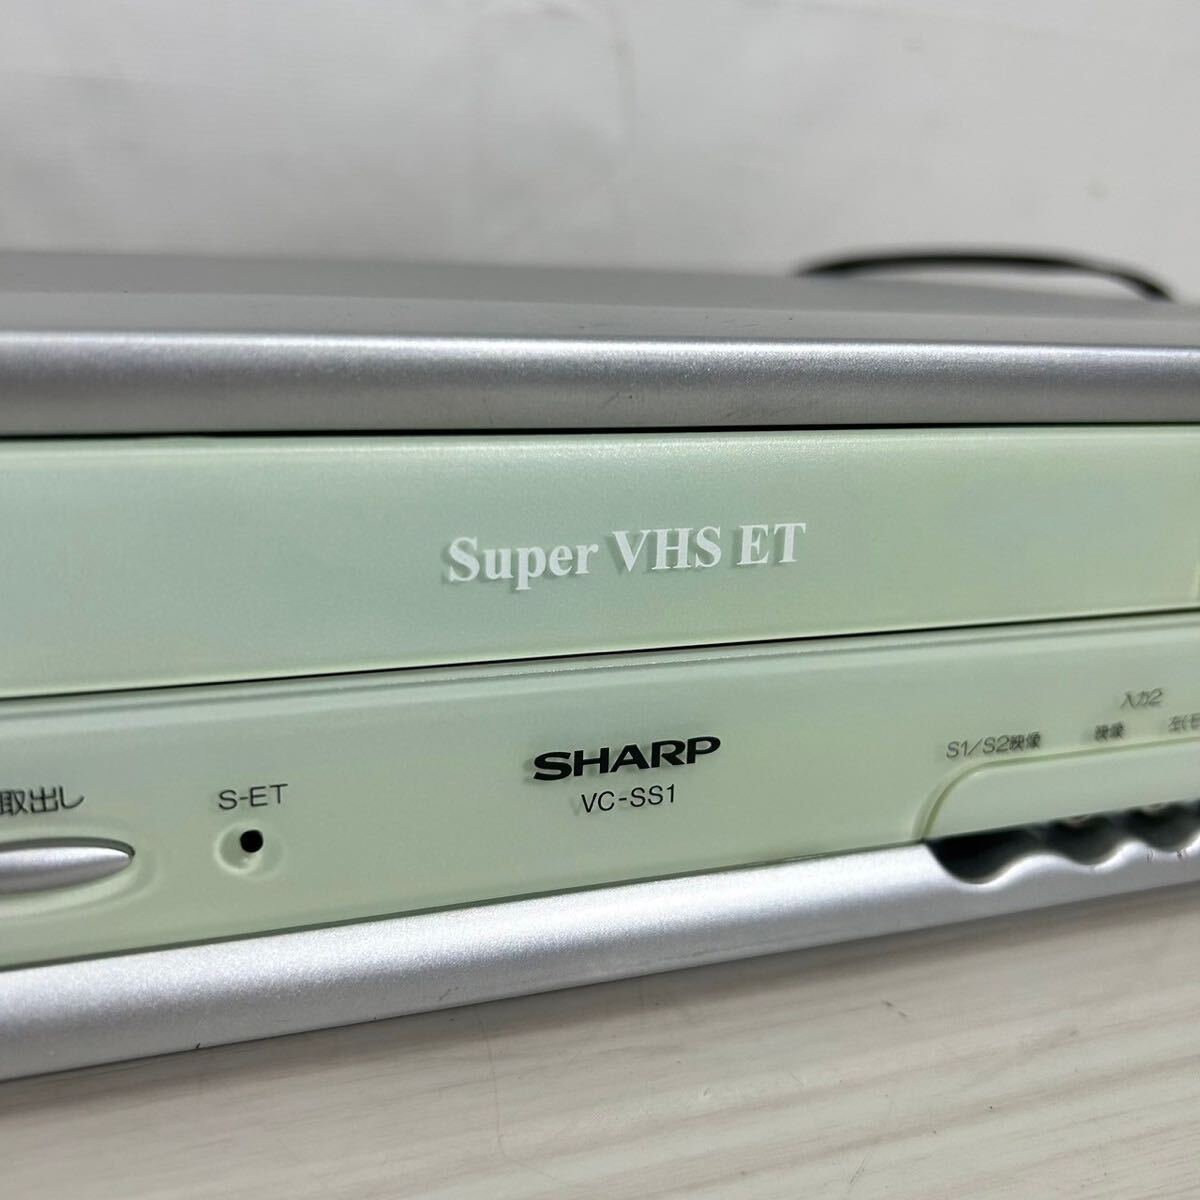 Y304/SHARP/ sharp /VHS видеодека /VC-SS1/2001 год производства / электризация подтверждено / видео кассета магнитофон / с дистанционным пультом 